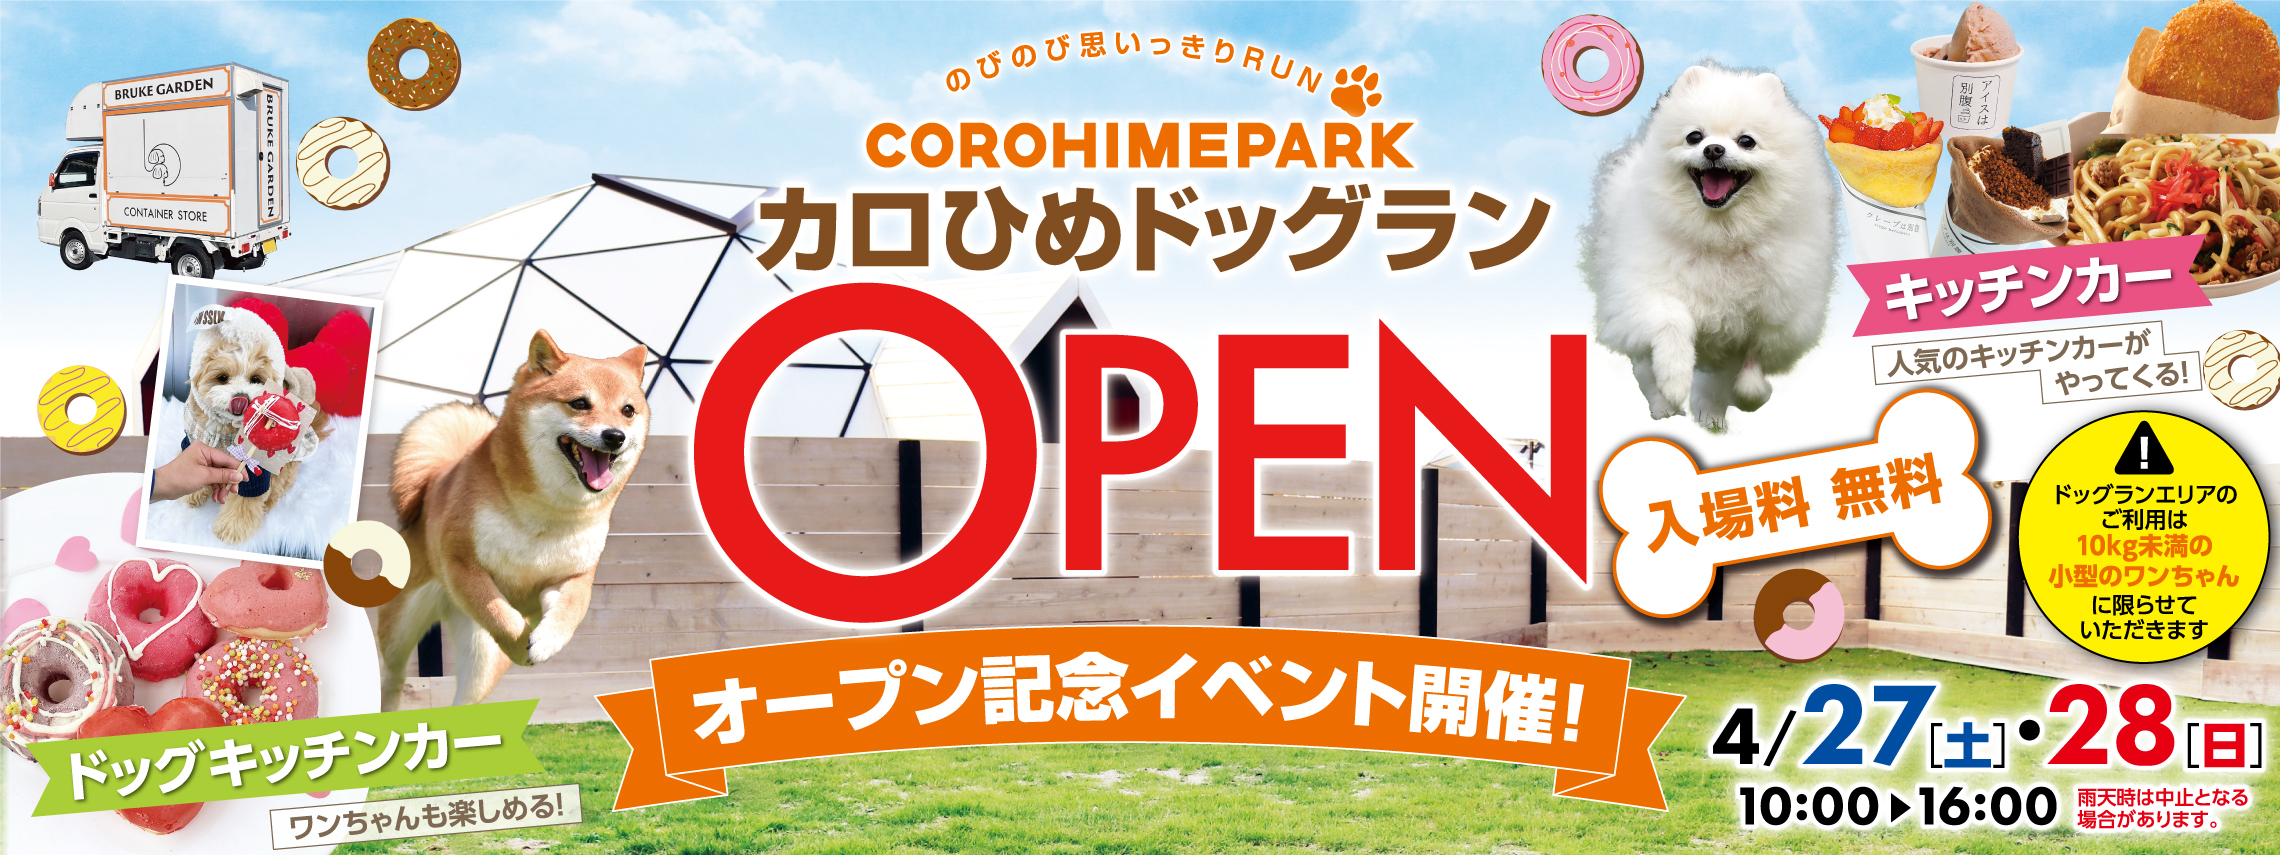 COROHIME_ドッグランオープンイベント_トップバナー